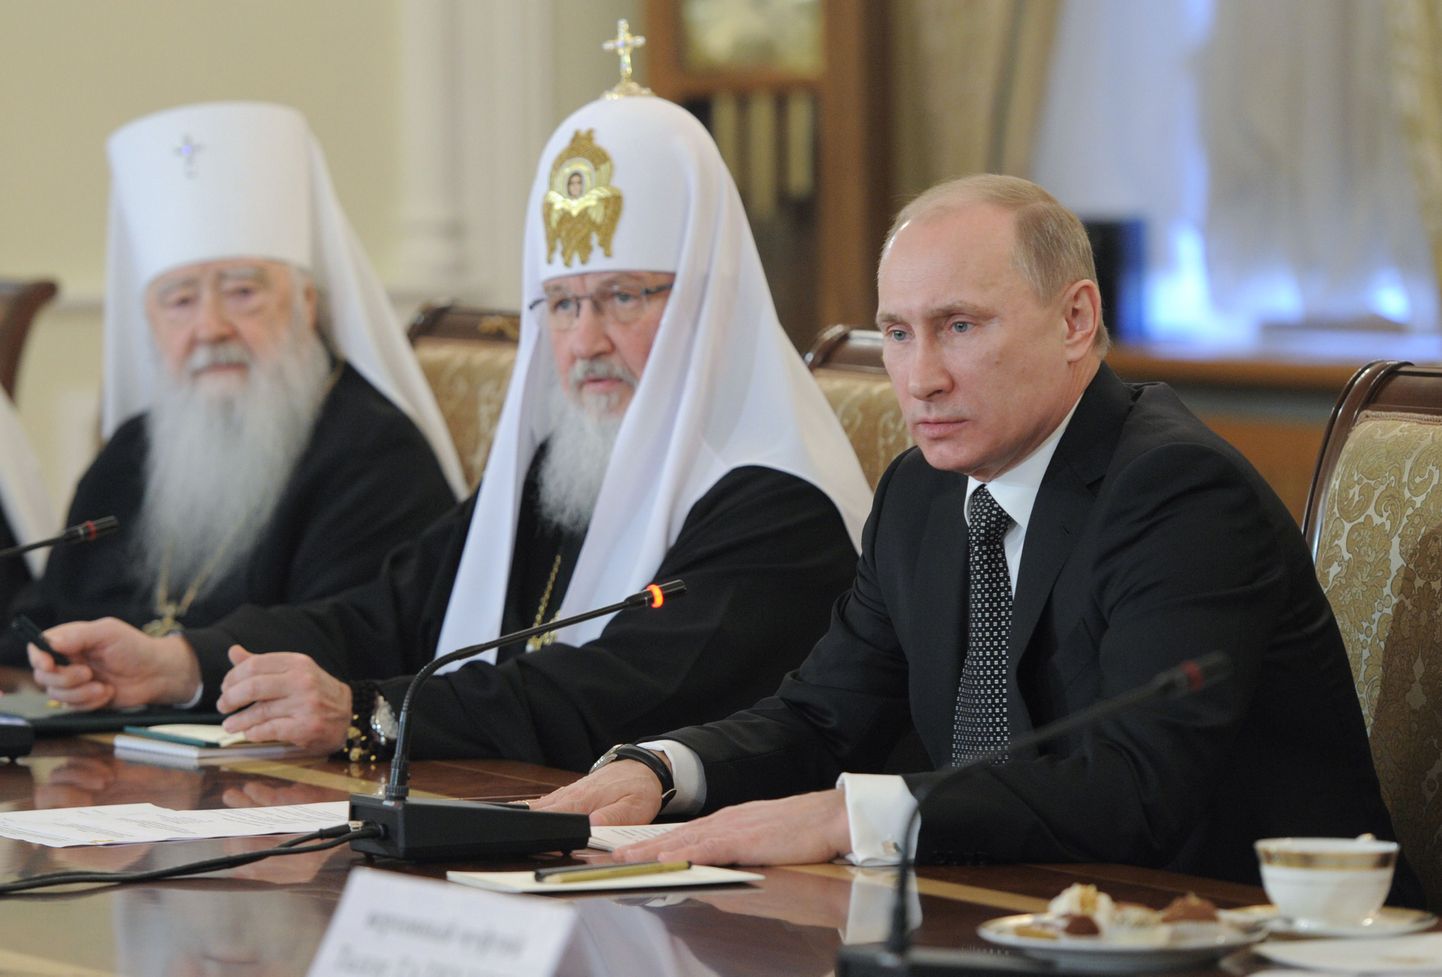 Venemaa õigeusukiriku patriarh Kirill koos Krutitsa ja Kolomna metropoliidi Juvenali ning peaminister Vladimir Putiniga. Kirilli randmelt paistab kell